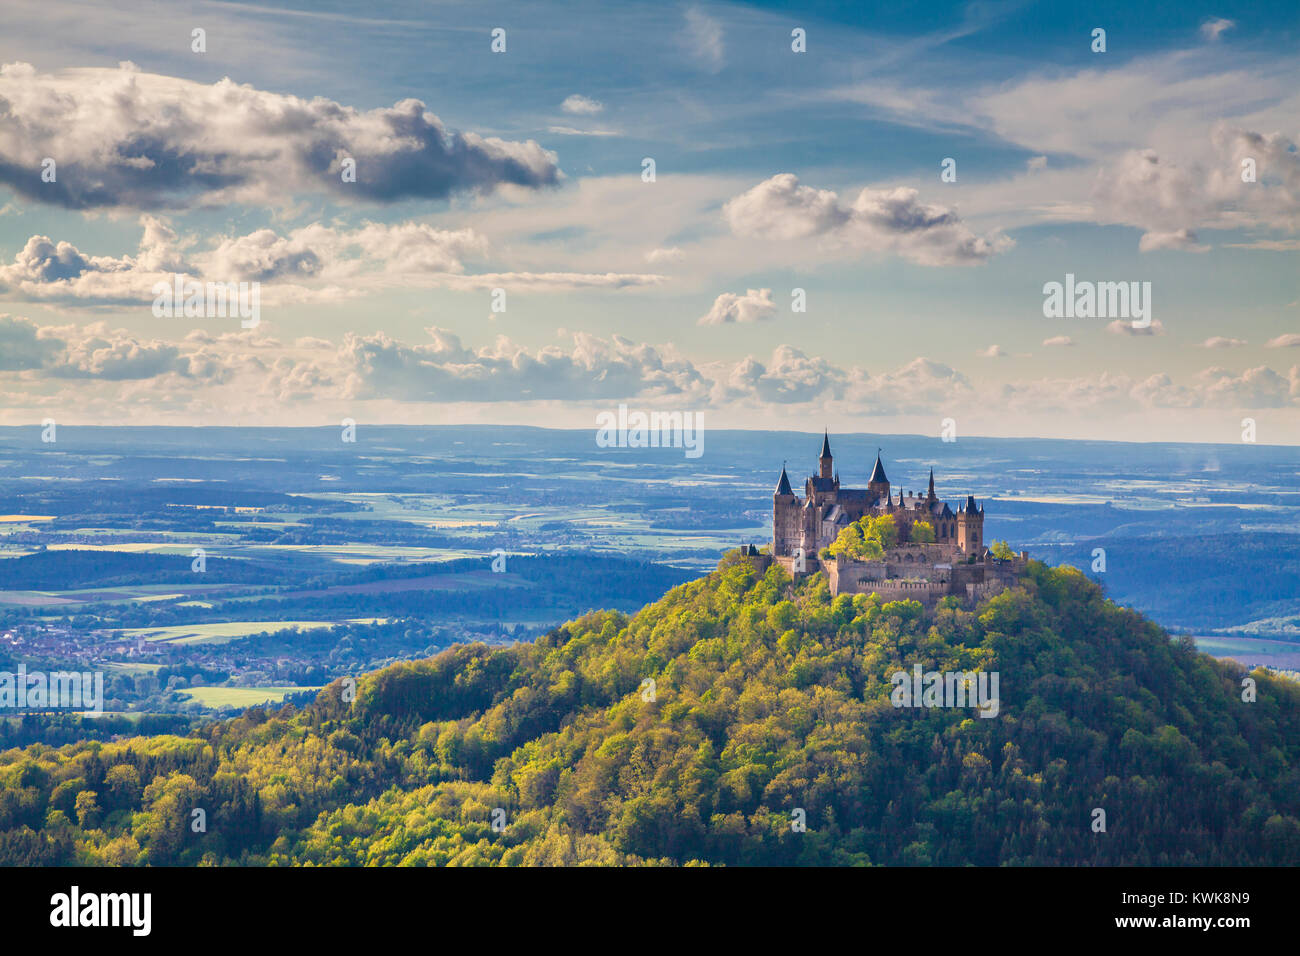 Vue aérienne du Château de Hohenzollern, célèbre siège ancestral de la maison impériale des Hohenzollern et l'un des châteaux les plus visités d'Europe, Allemagne Banque D'Images